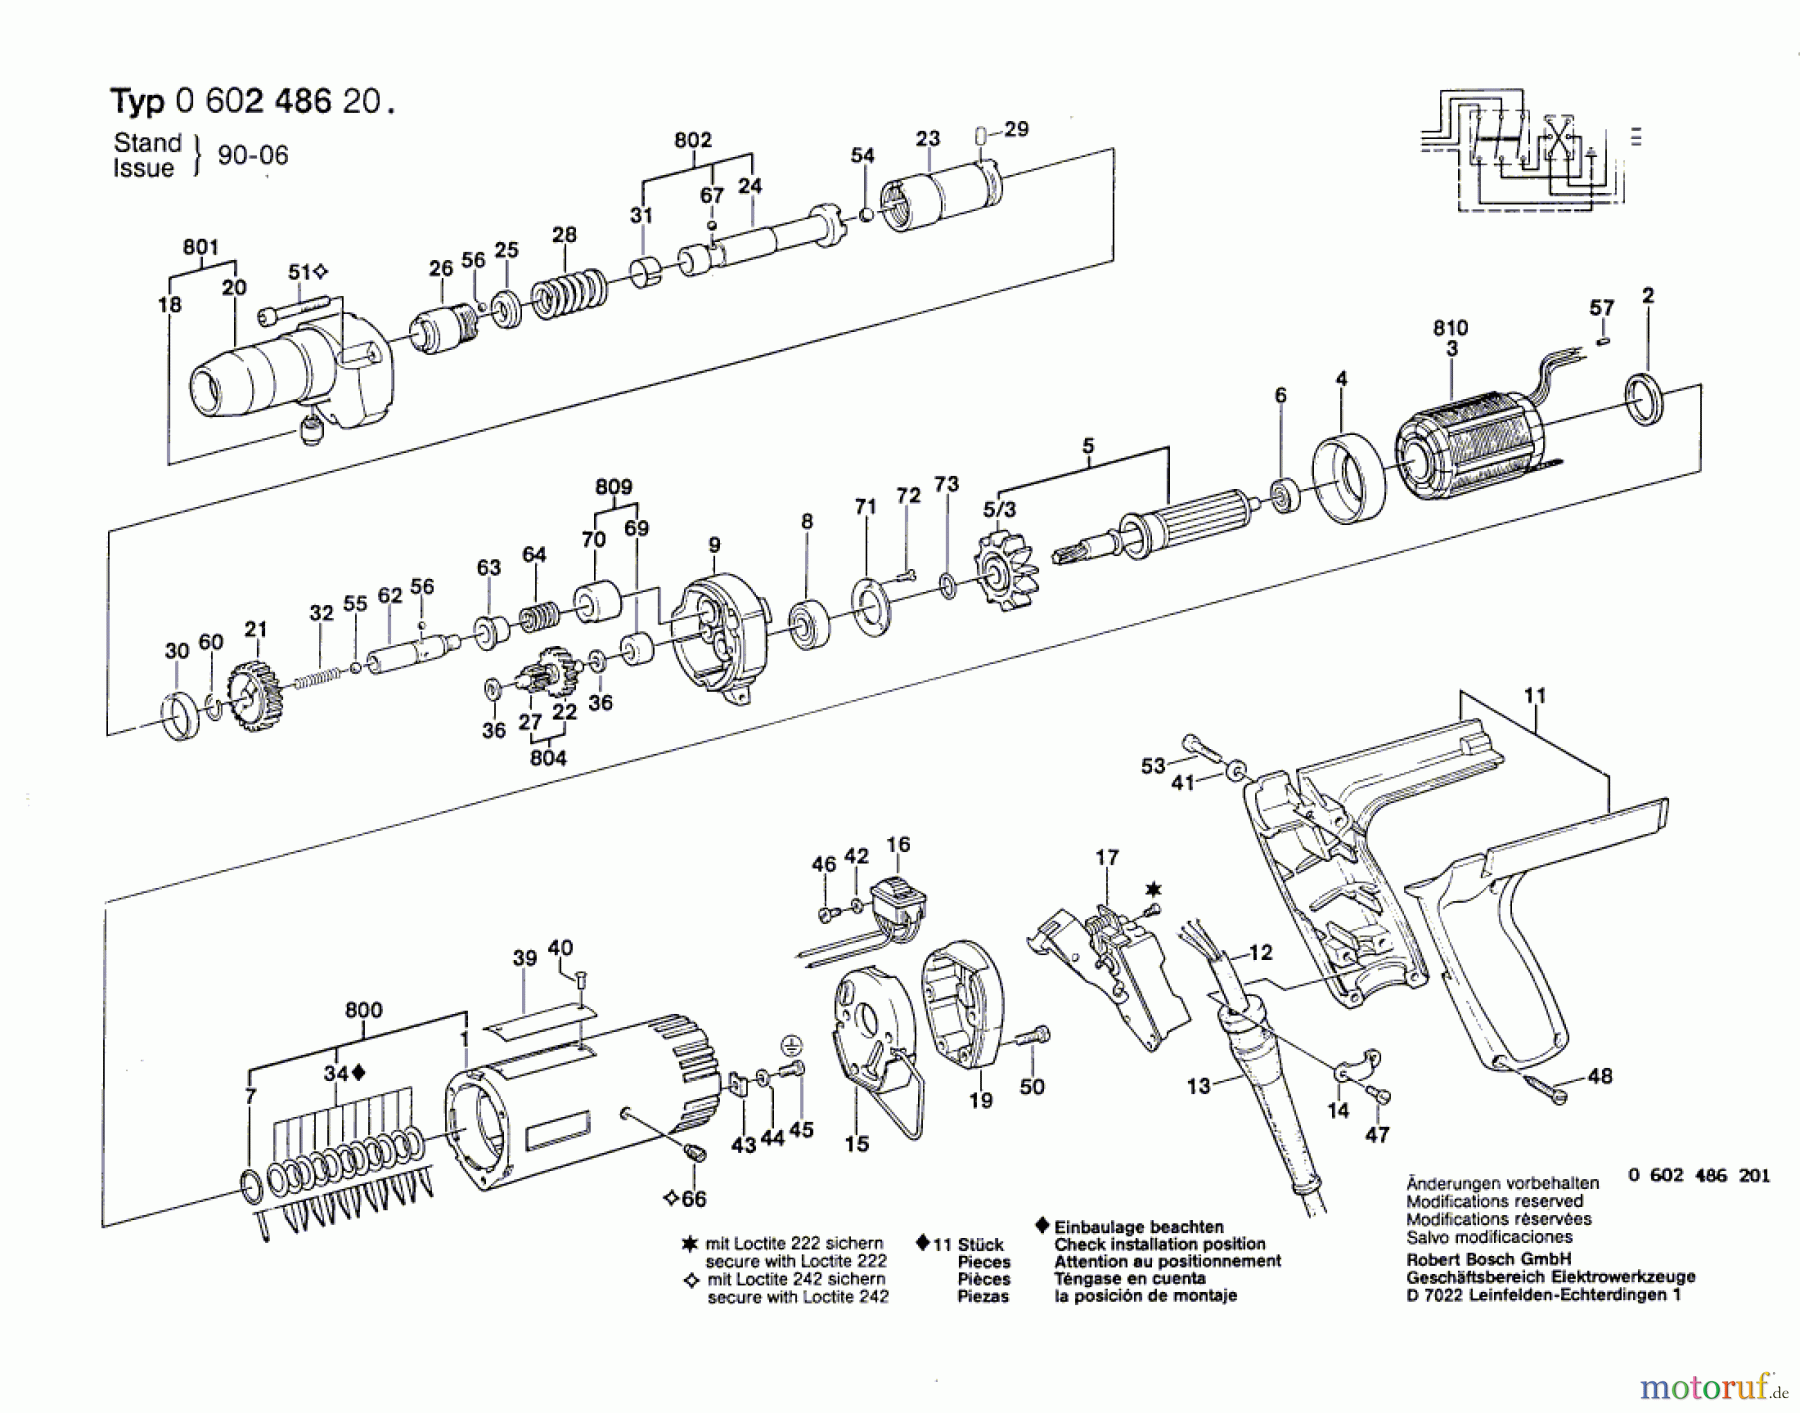  Bosch Werkzeug Schrauber ---- Seite 1